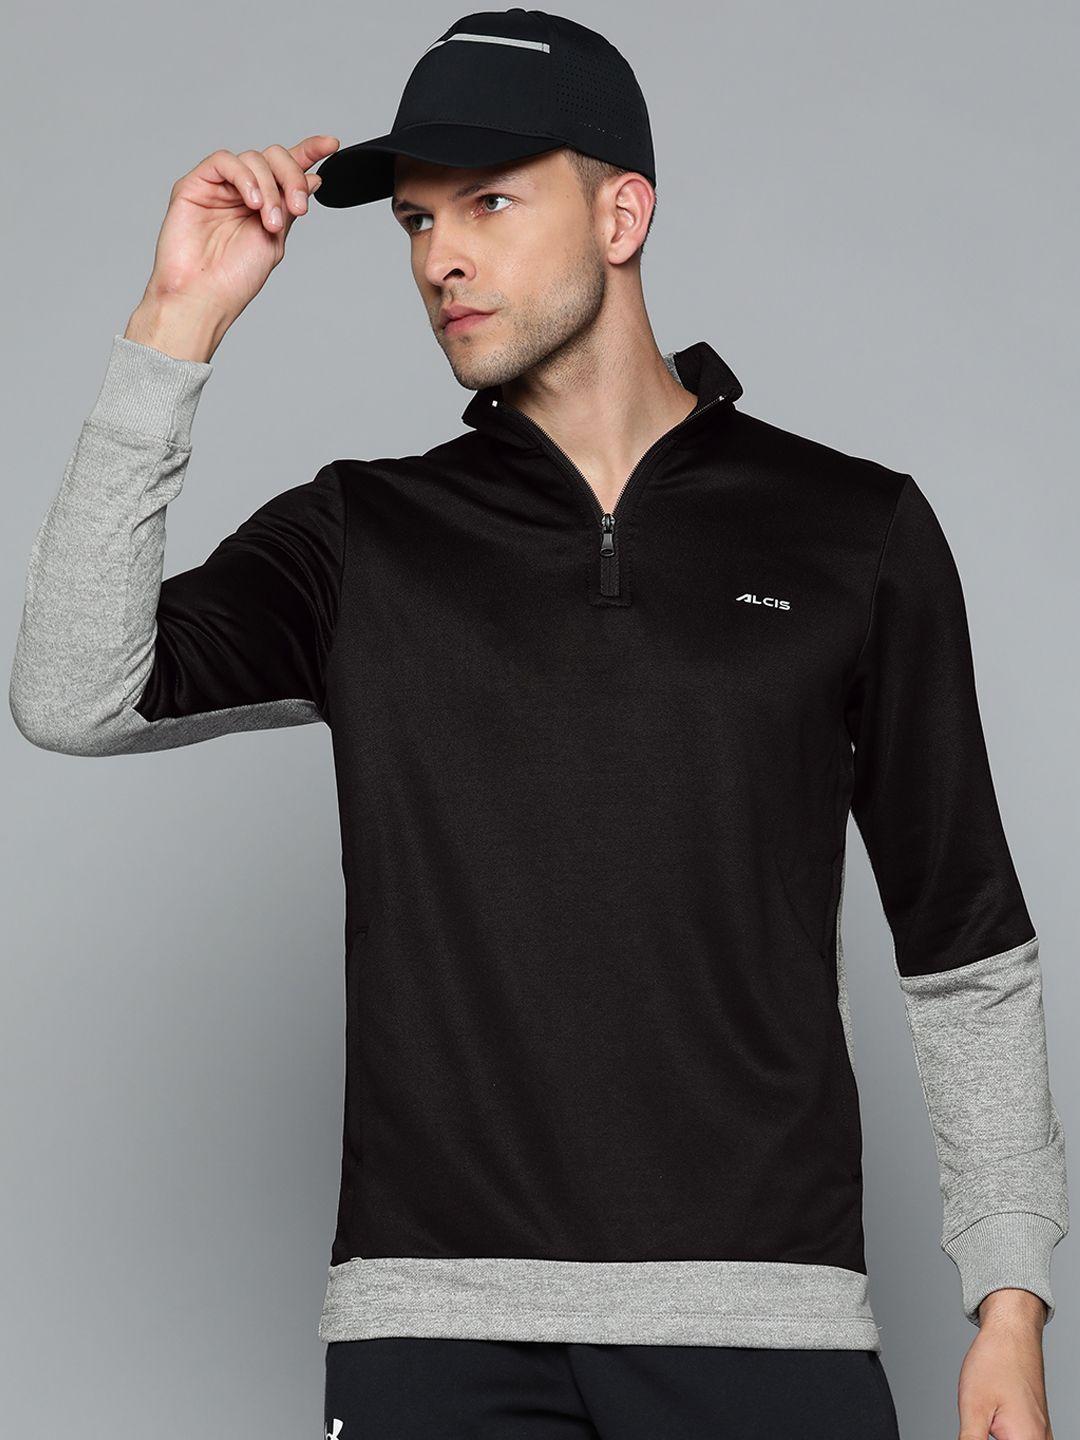 alcis men black & grey colourblocked sweatshirt